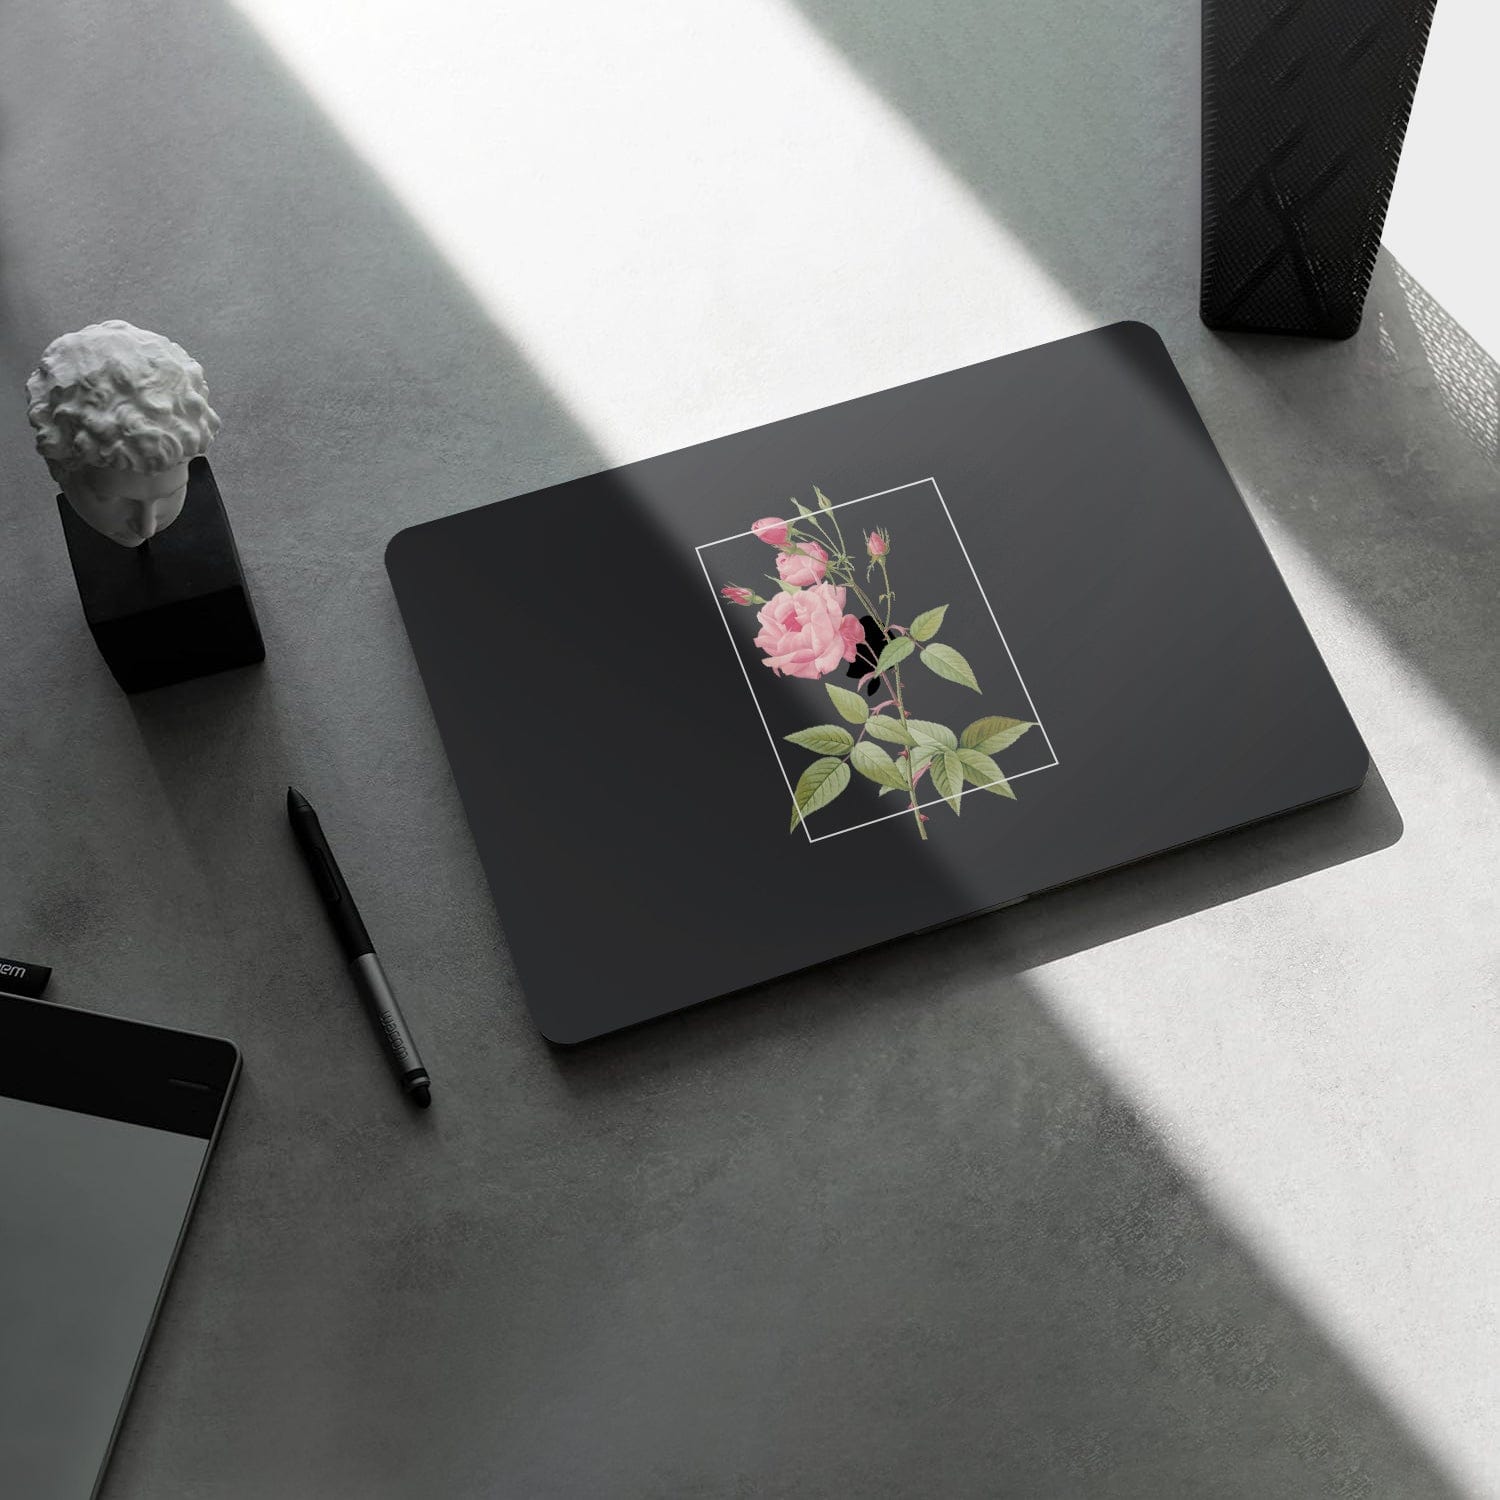 Hybrid-Flex Pink Rose Arts Case for MacBook Pro